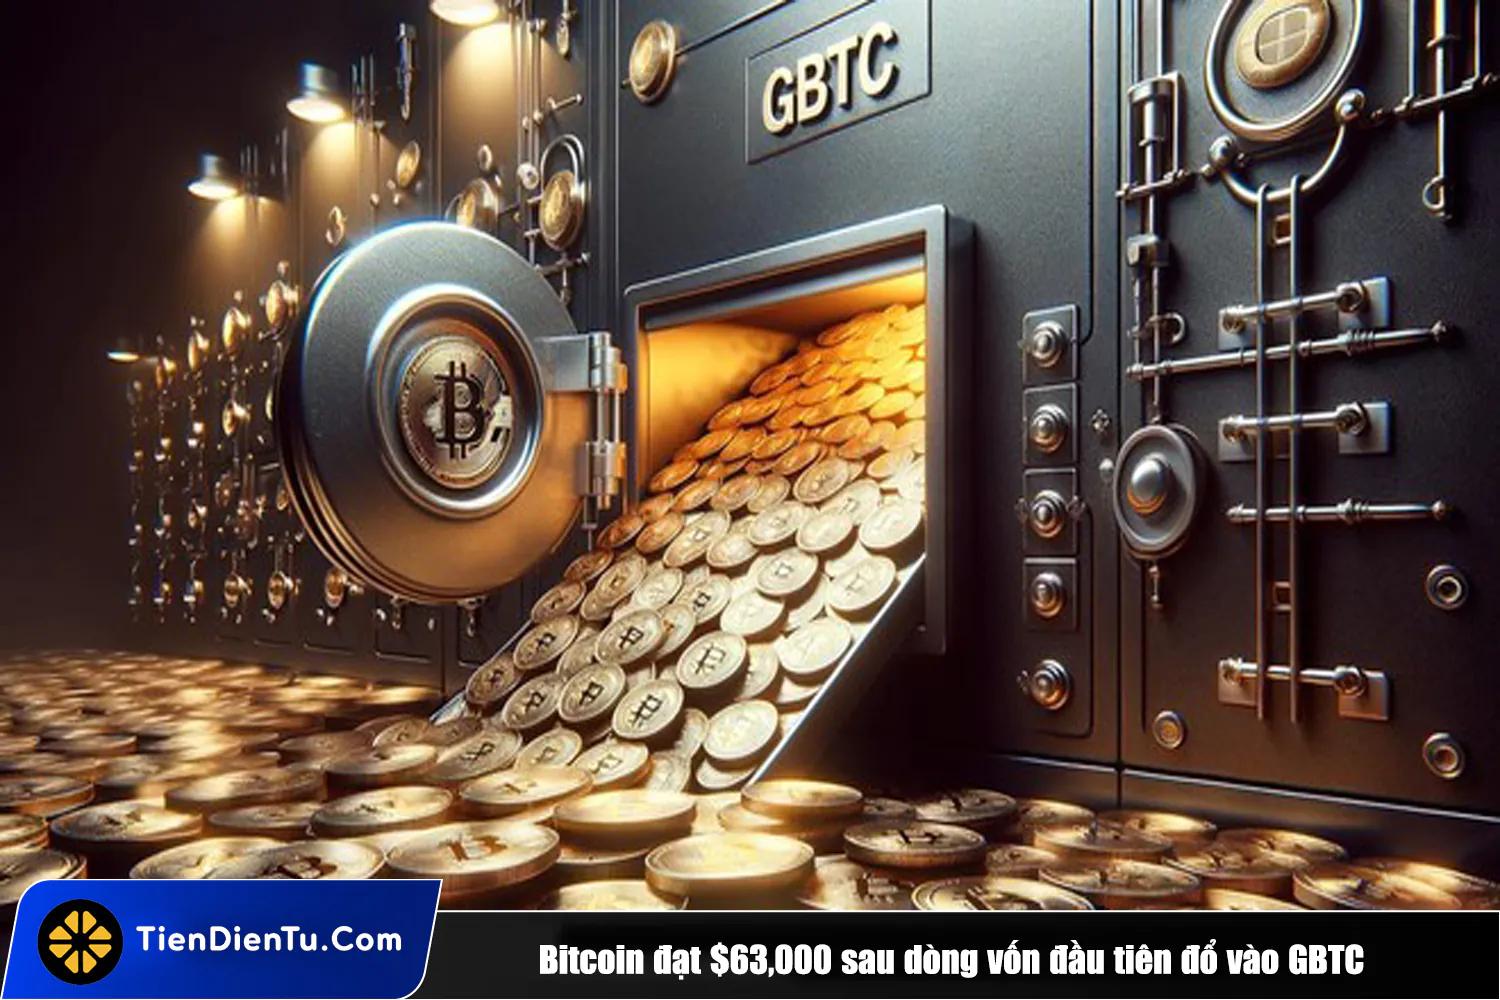 Tiendientu bitcoin tang 63k usd gbtc